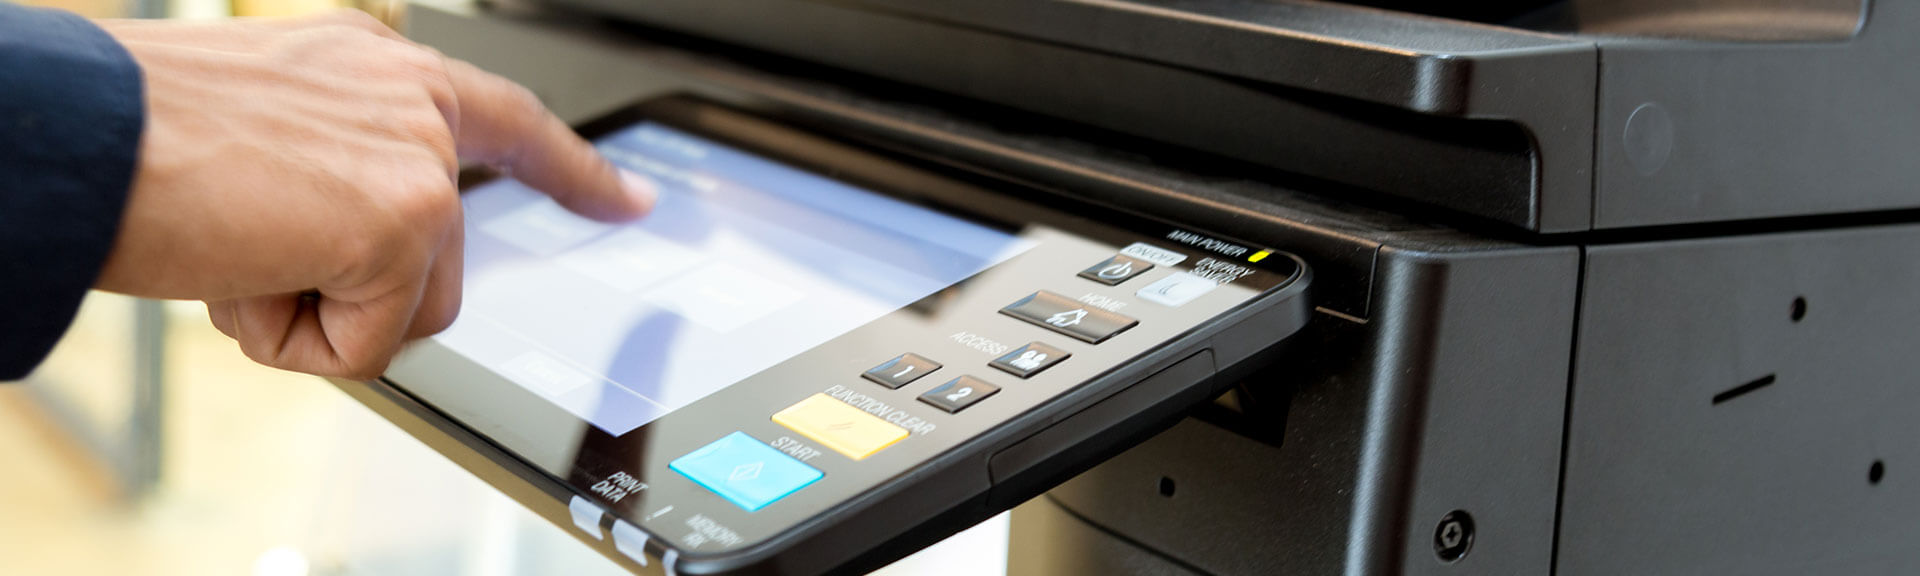 Servicemitarbeiter richtet Laserdrucker-Kopiermaschine ein